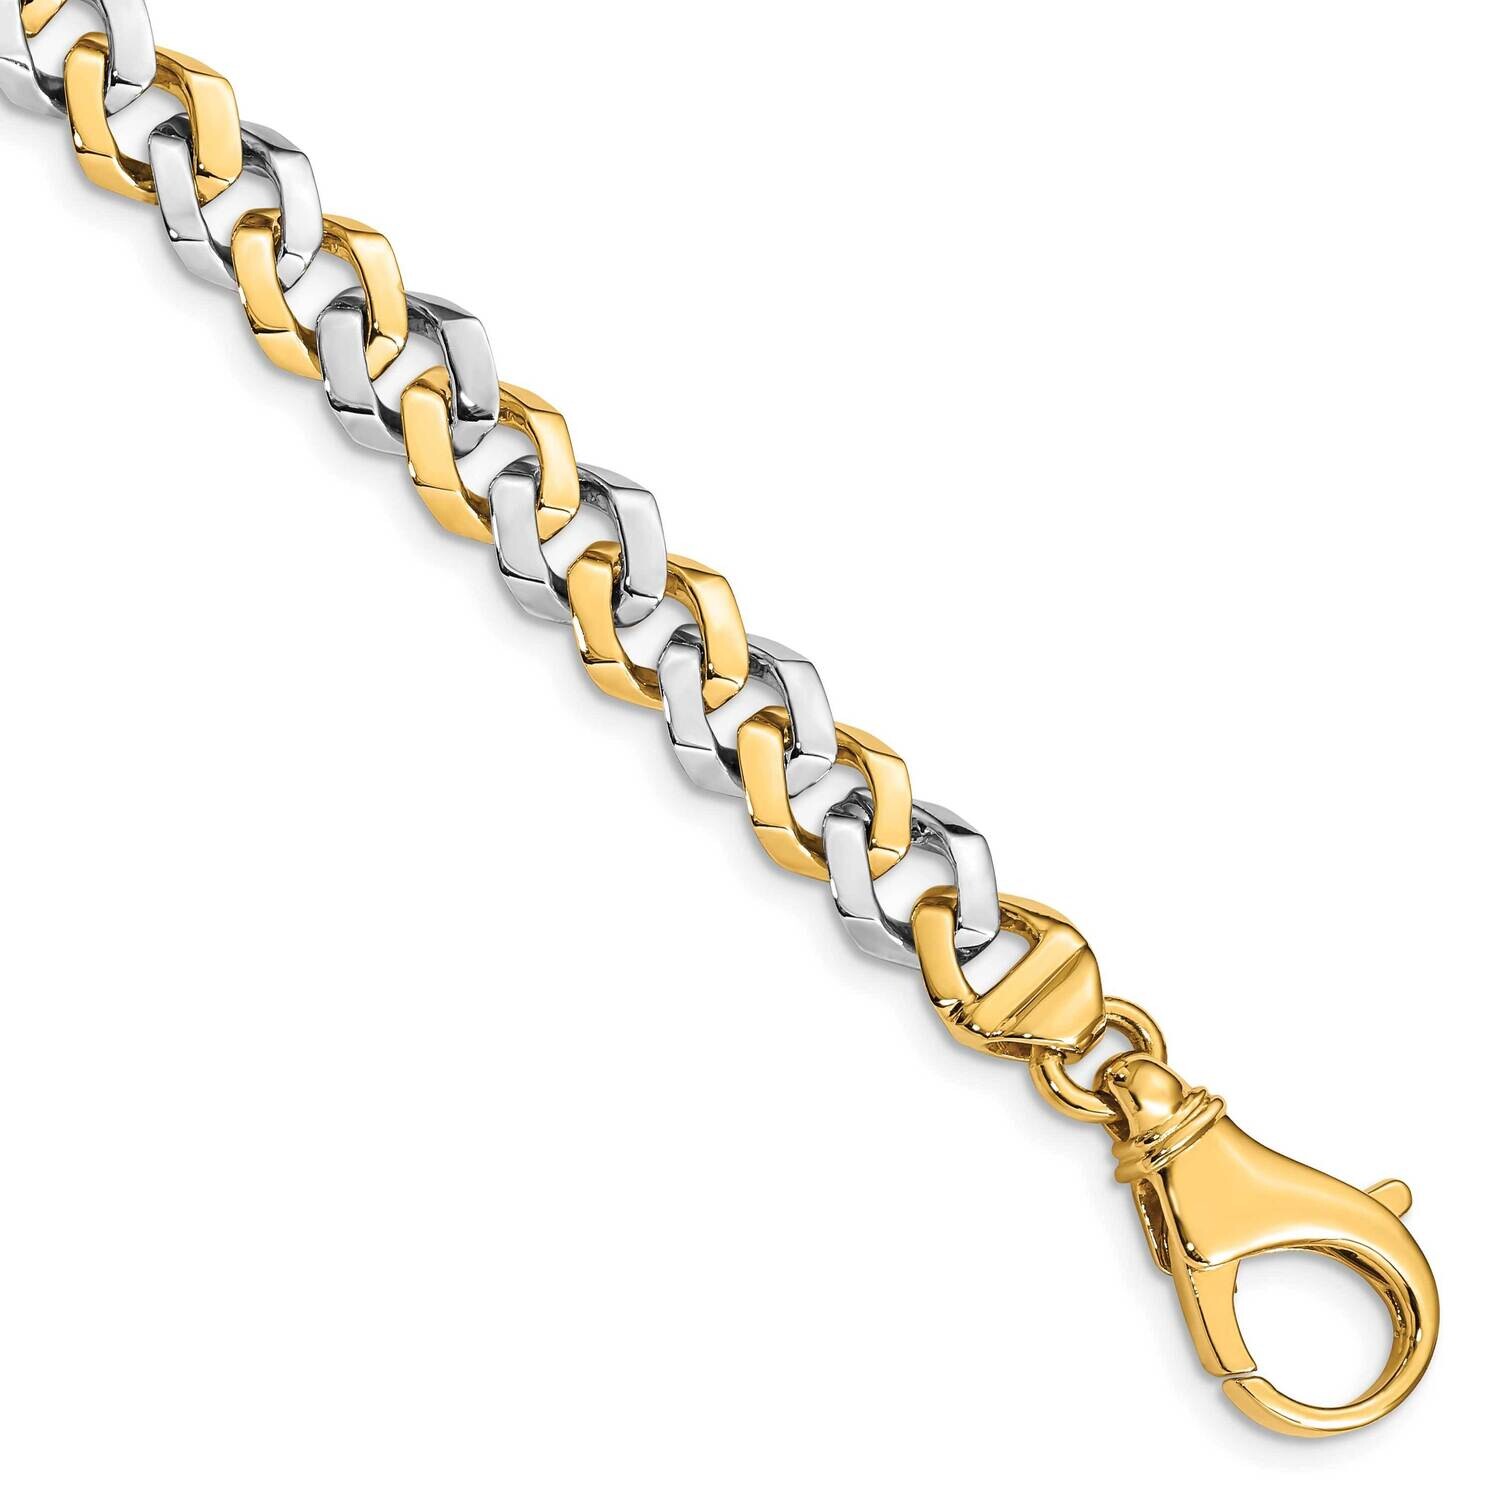 8mm Hand-Polished Fancy Link Bracelet 9 Inch 10k Two-Tone Gold 10LK515-9